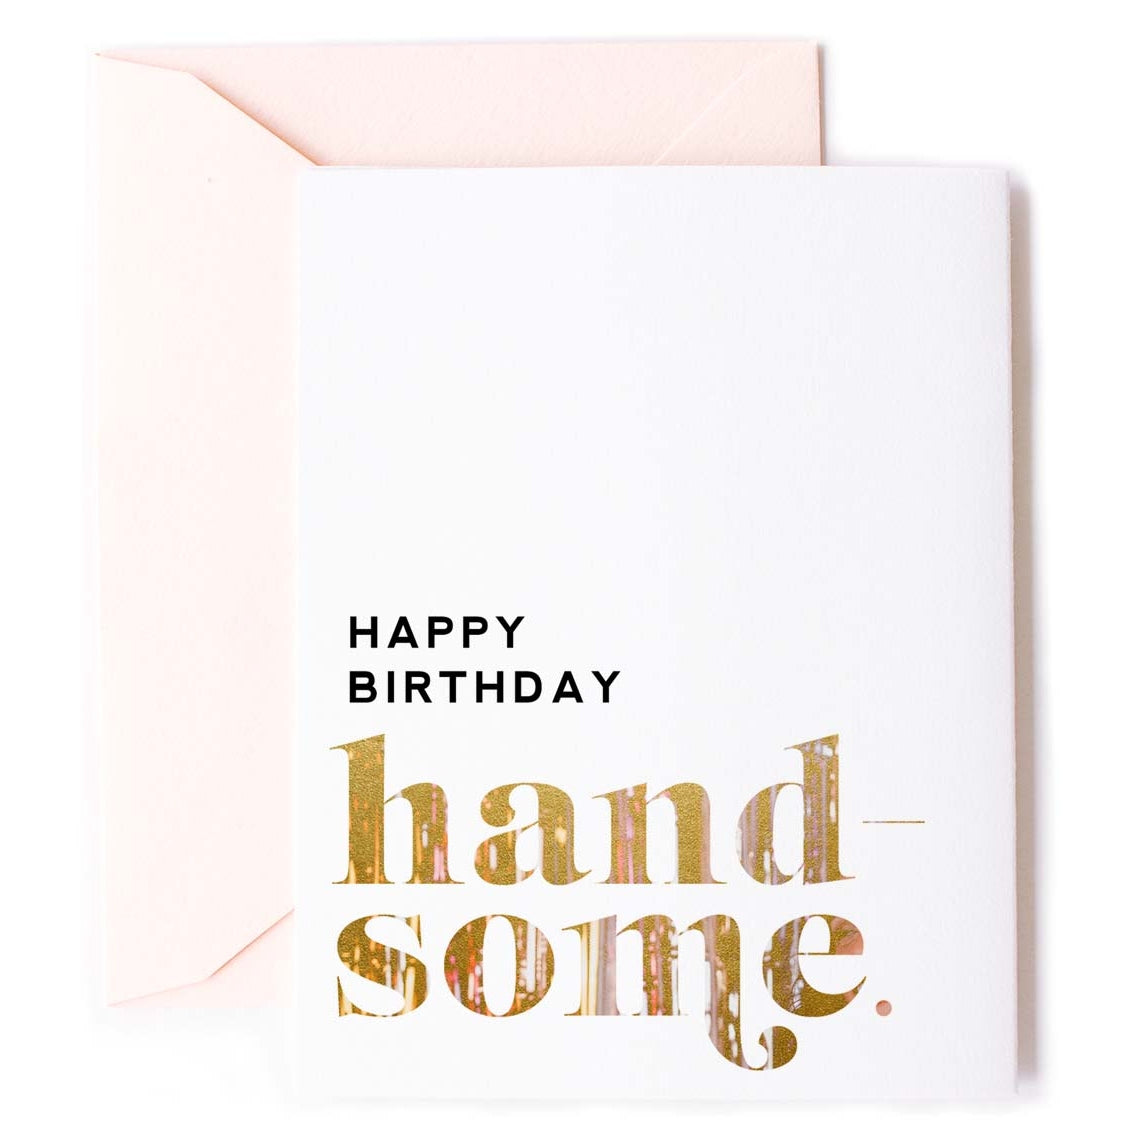 Happy Birthday Handsome - Stylish Birthday Card for Men